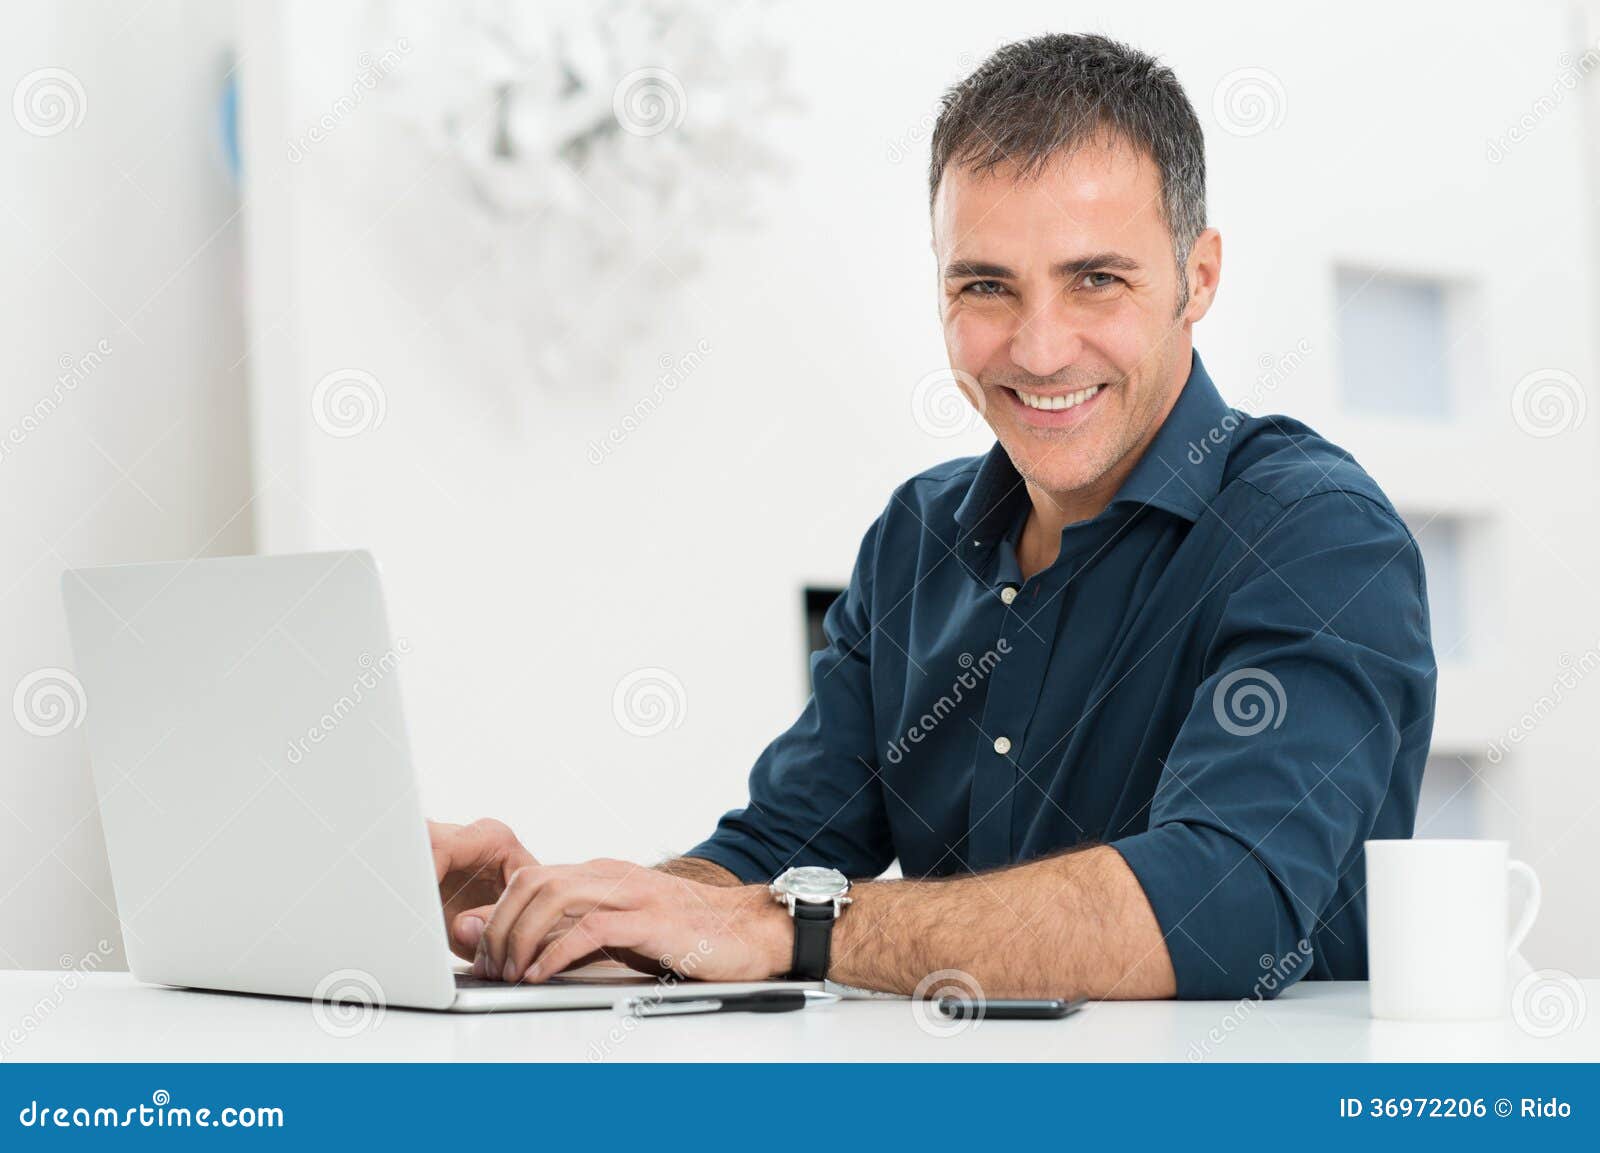 man using laptop at desk